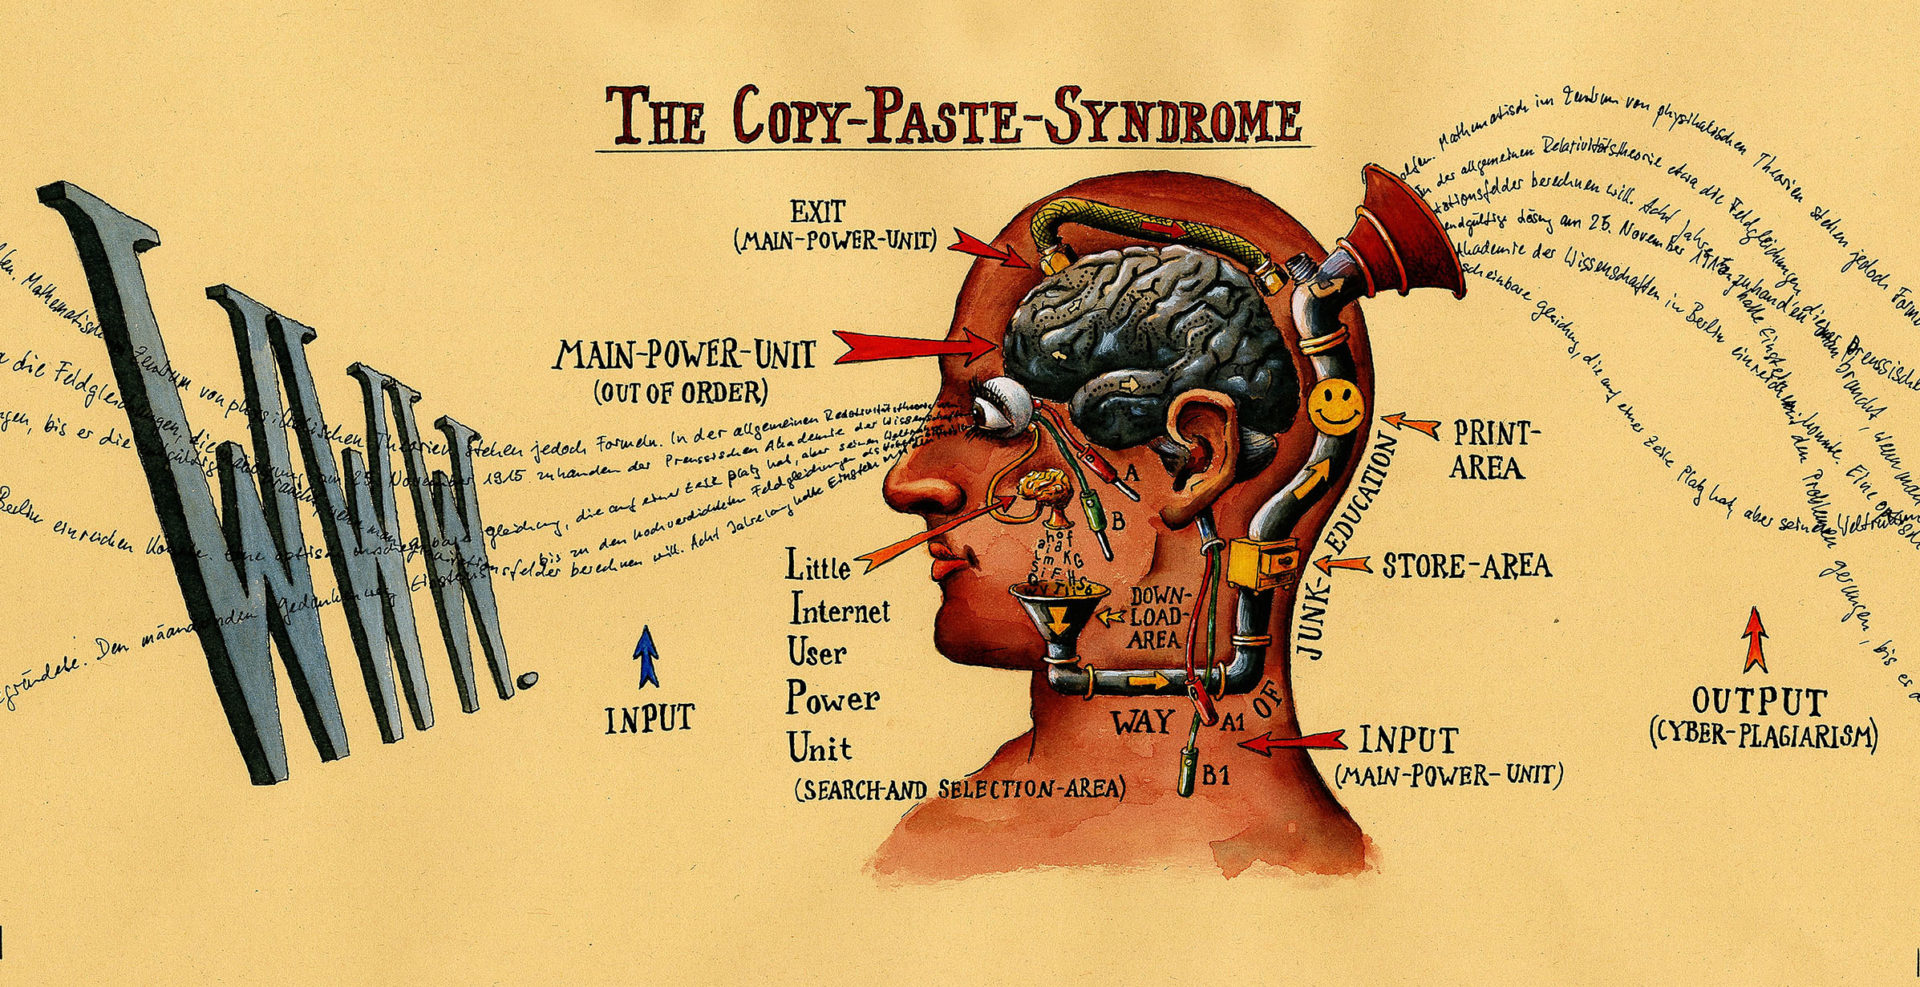 Anatomische Sicht auf das Copy & Paste Syndrom